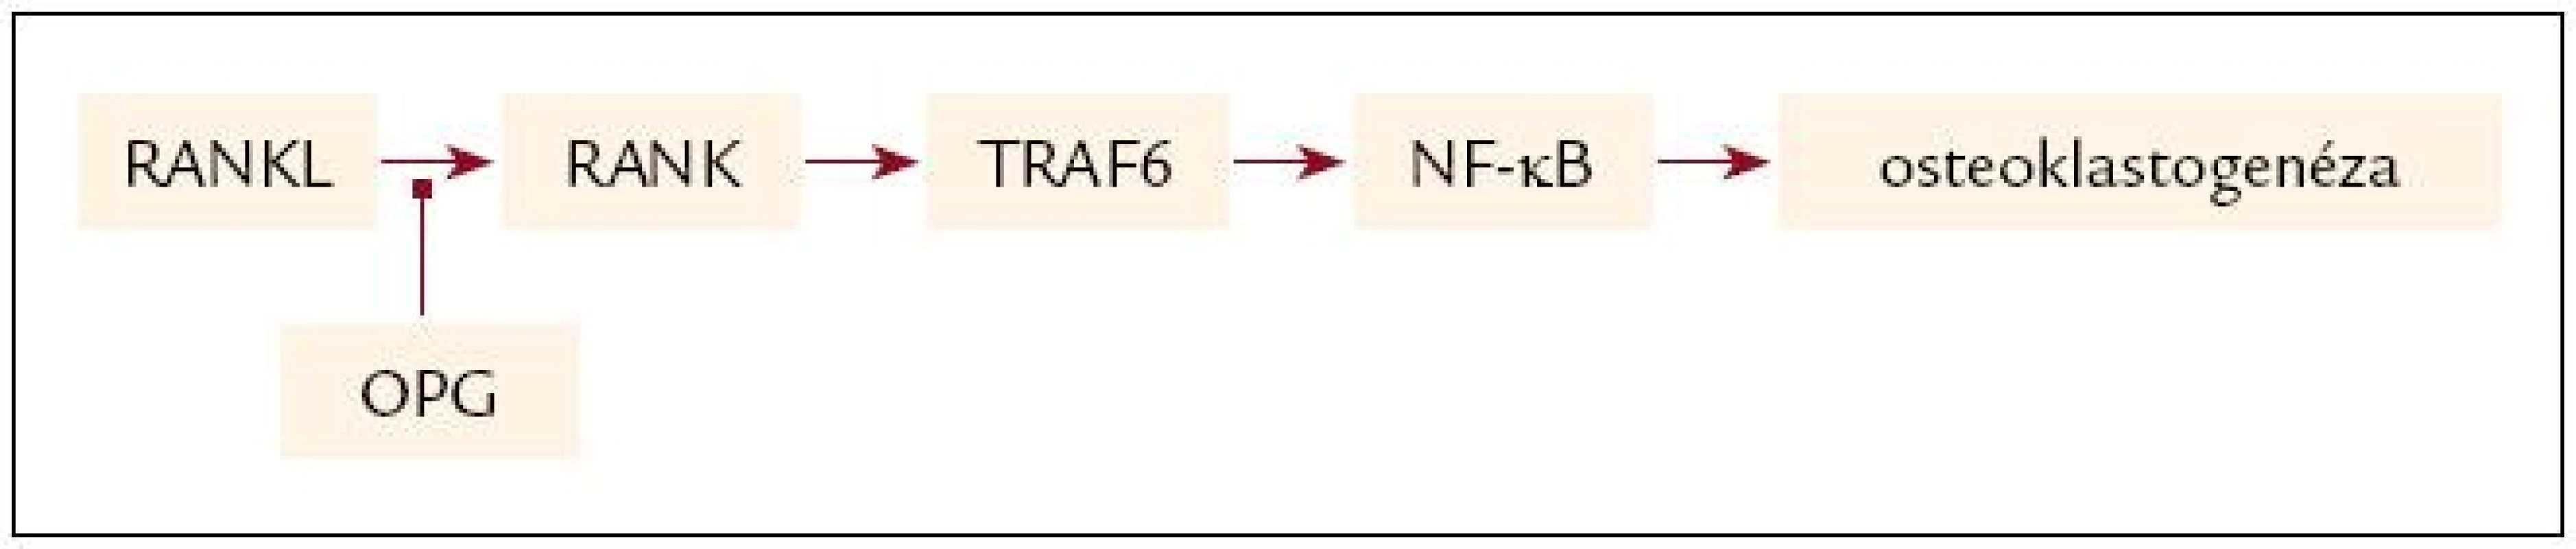 Aktivácia signálnej transdukčnej cesty väzbou RANKL na RANK a jej inhibícia sprostredkovaná OPG.